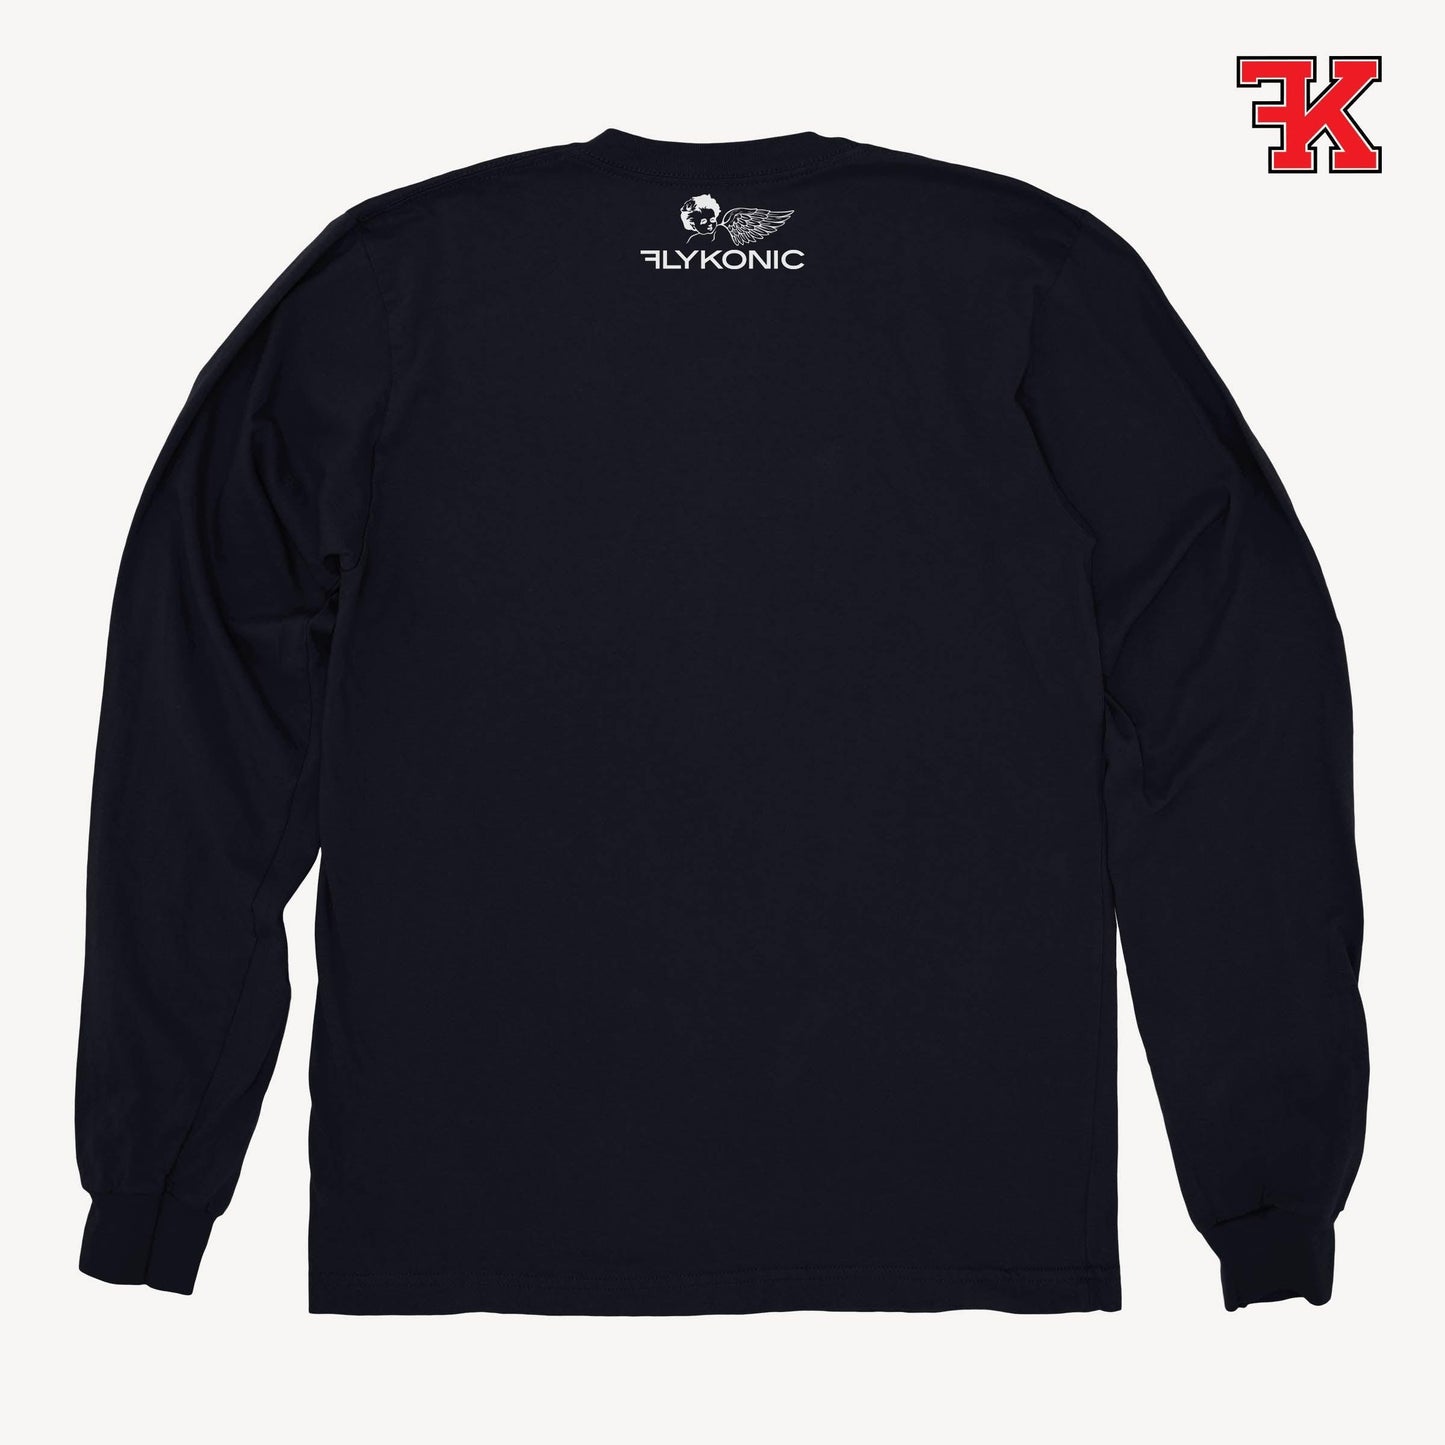 Flykonic Sweater